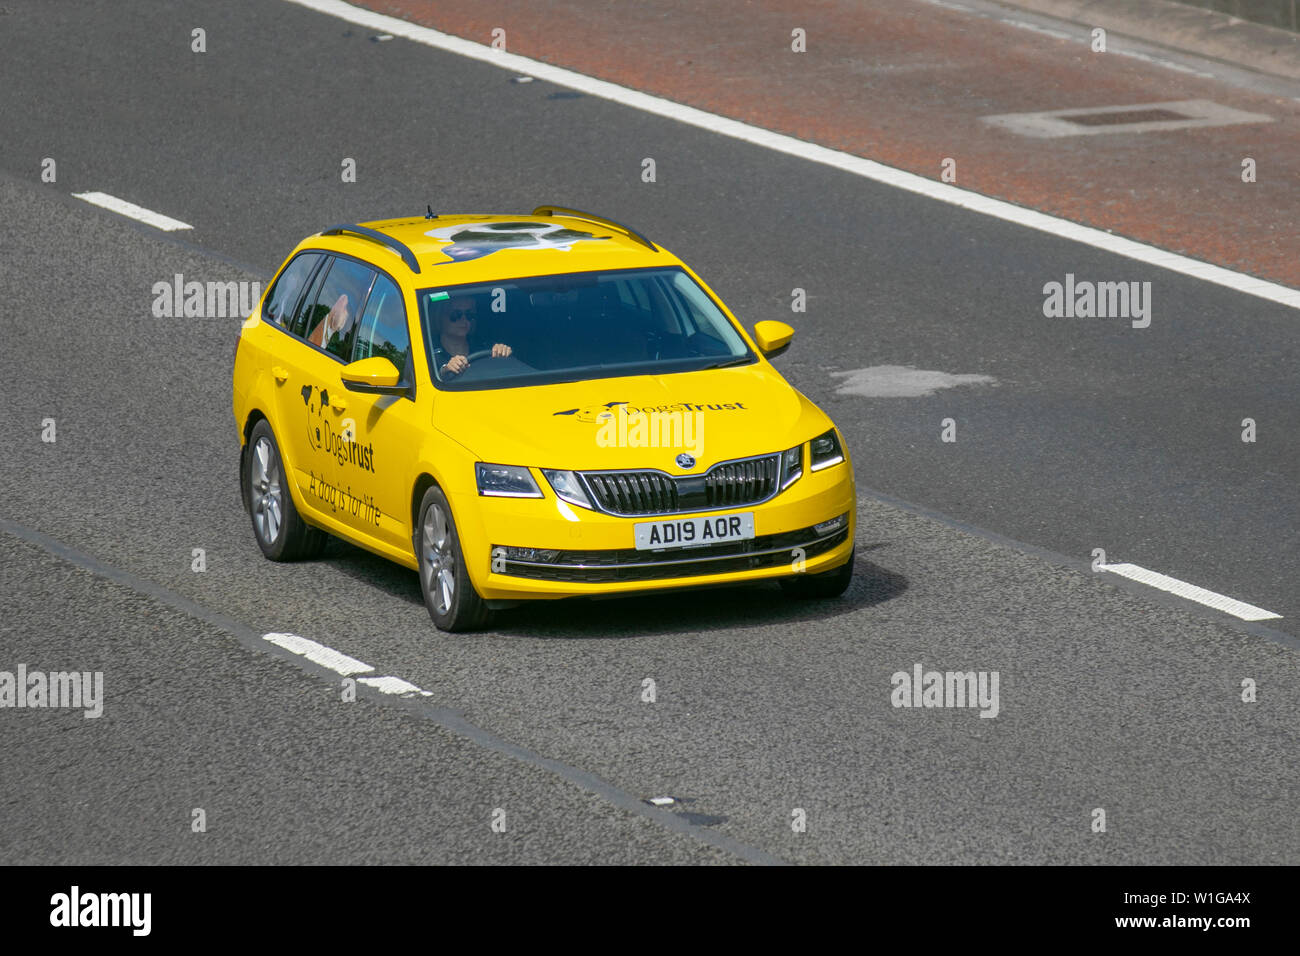 2019 Škoda Octavia jaune SE L TDI 4X4 S-A ; M6, Lancaster, Royaume-Uni ; le trafic de véhicules, transports, voitures, moderne, vers le nord sur l'autoroute 3. Banque D'Images